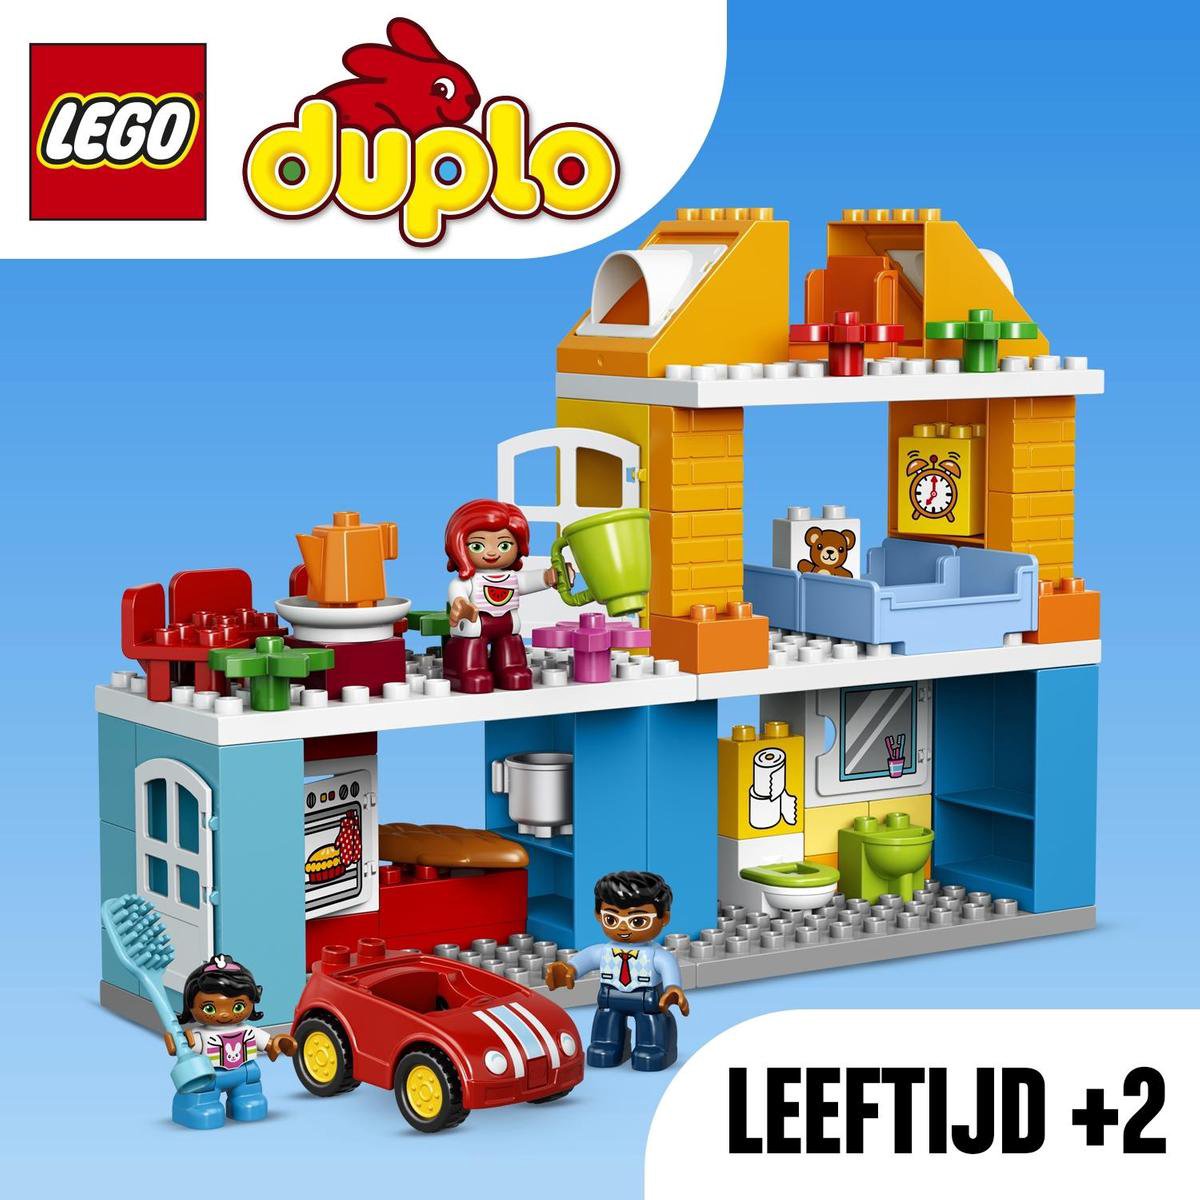 LEGO DUPLO Familiehuis - 10835 | bol.com